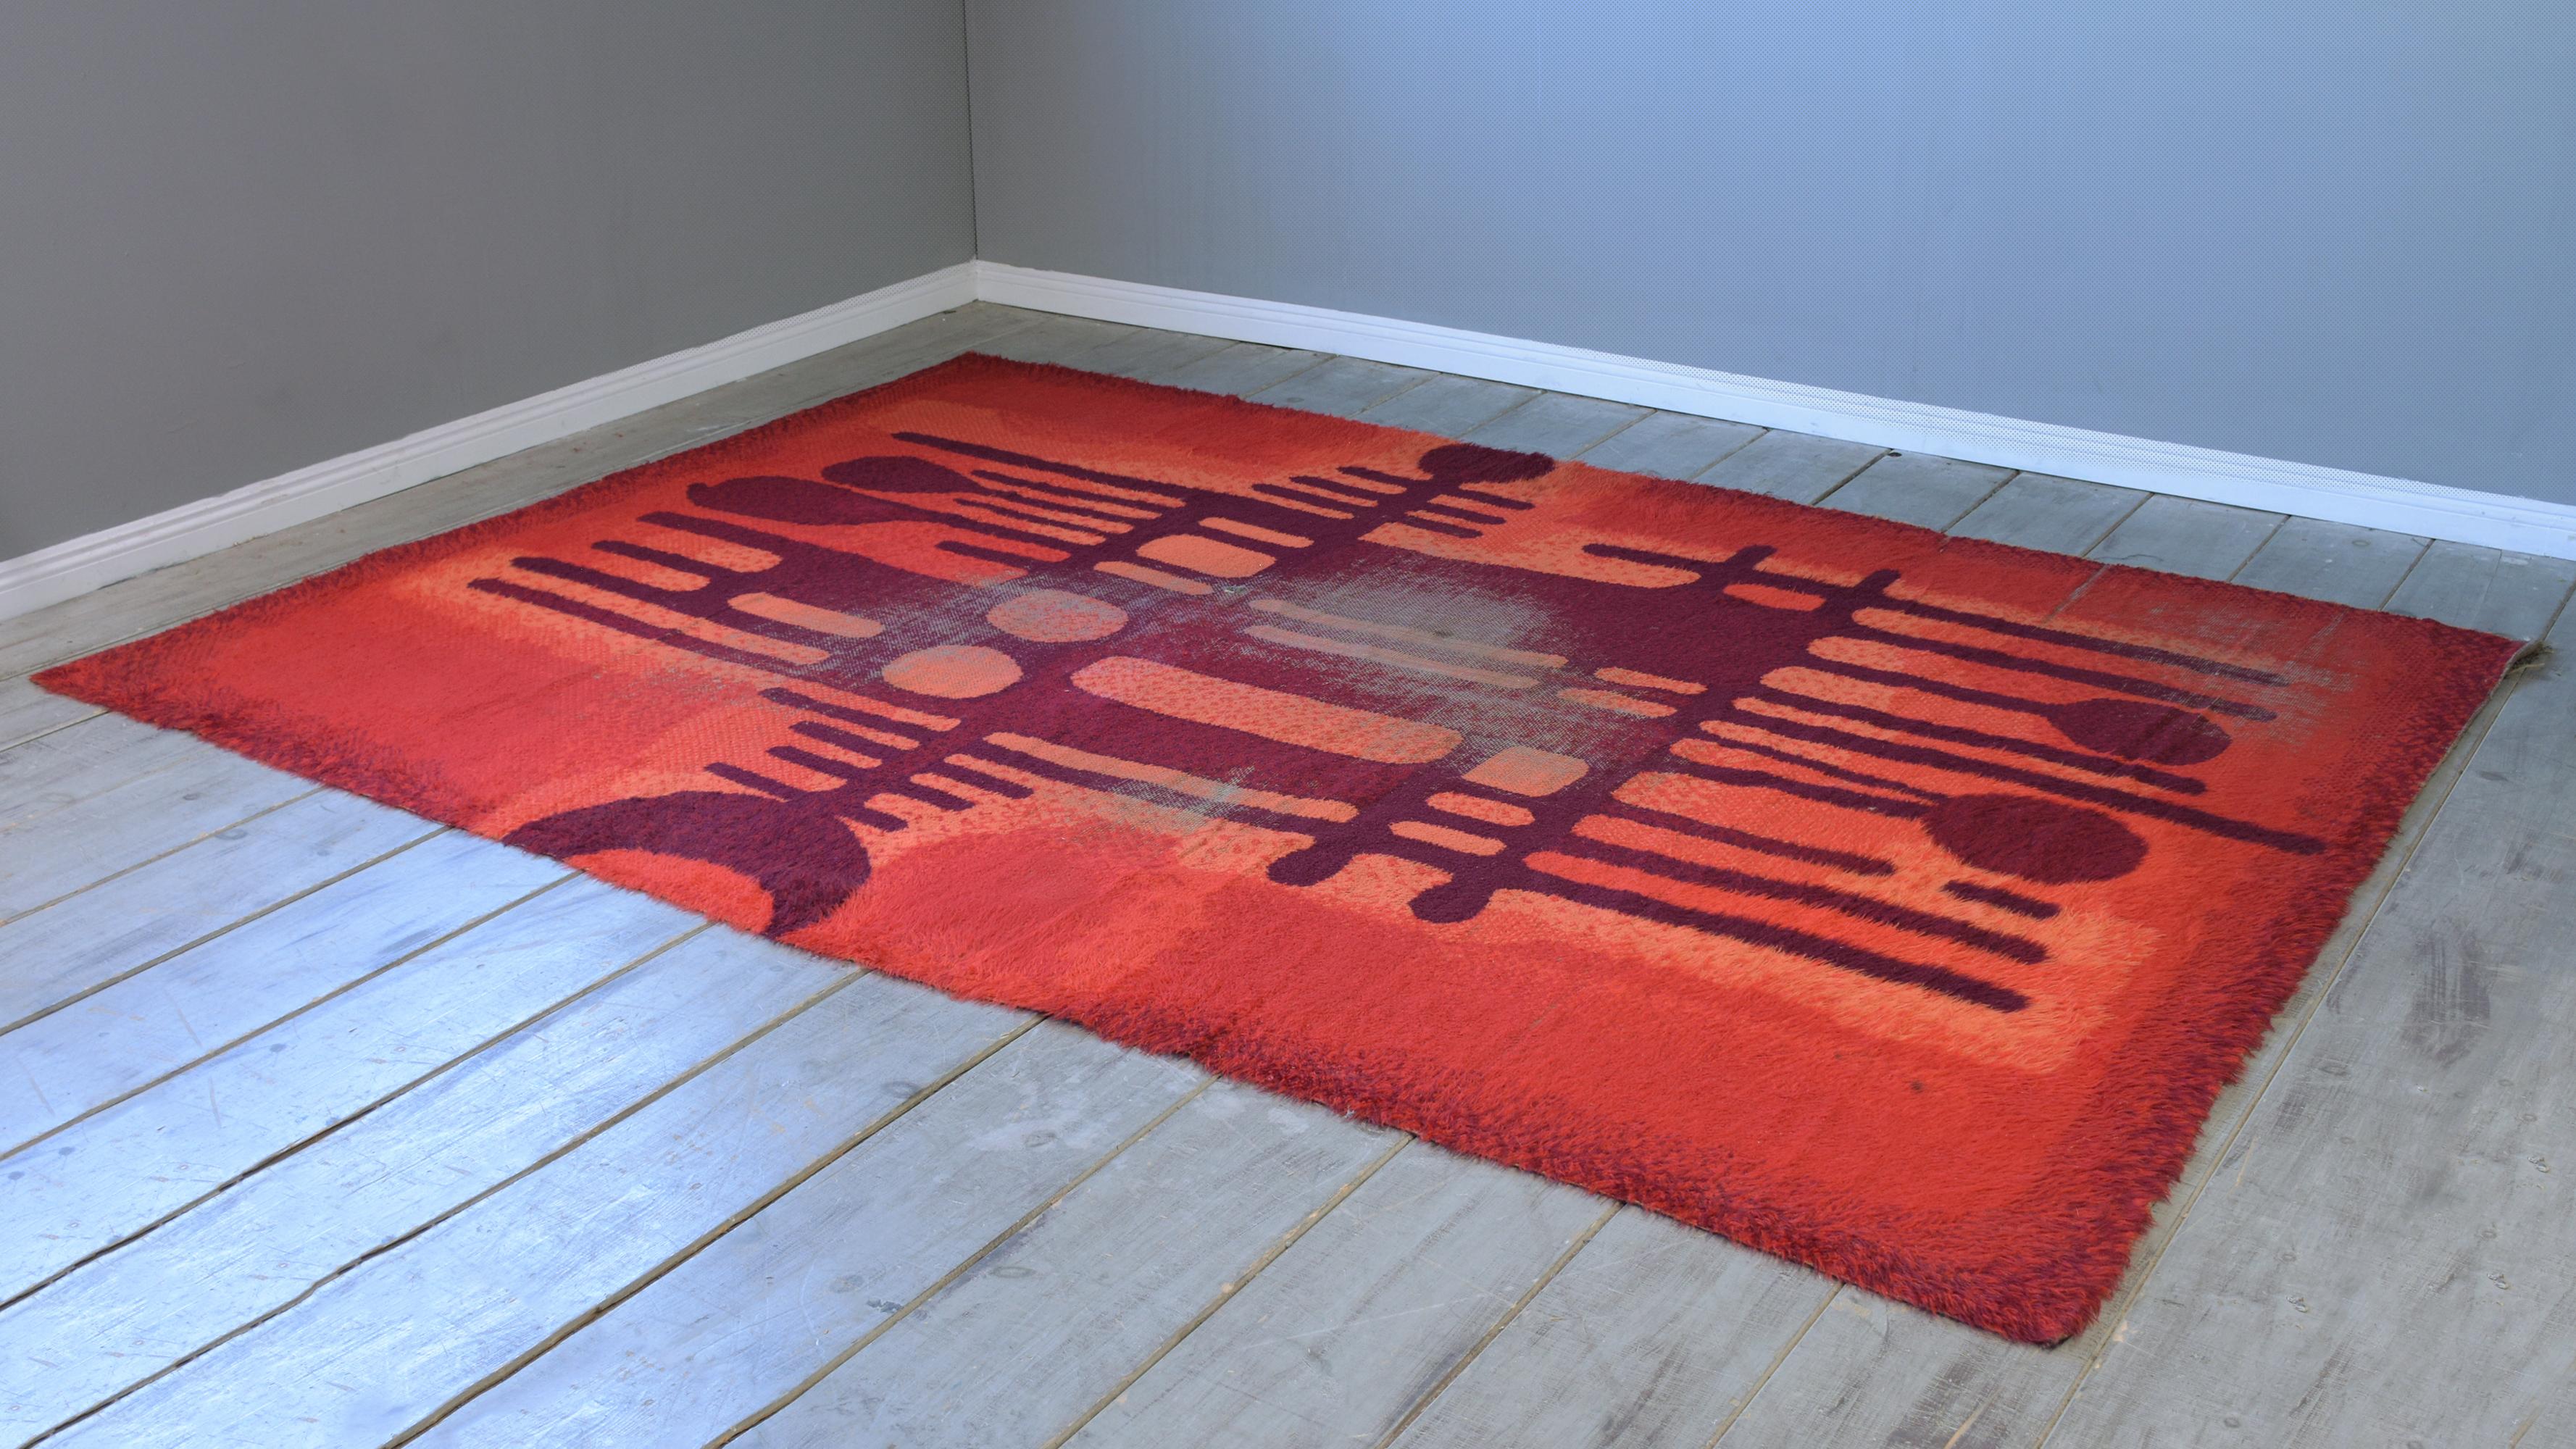 Dieser lebendige skandinavische Zottelteppich mit Feuermuster von Ege Rya hat einen dicken Wollflor und leuchtende Farben in Rot, Orange, Rosa und Braun. Dieser große Teppich im Vintage-Stil ist ein willkommener Farbtupfer in jeder inspirierten,